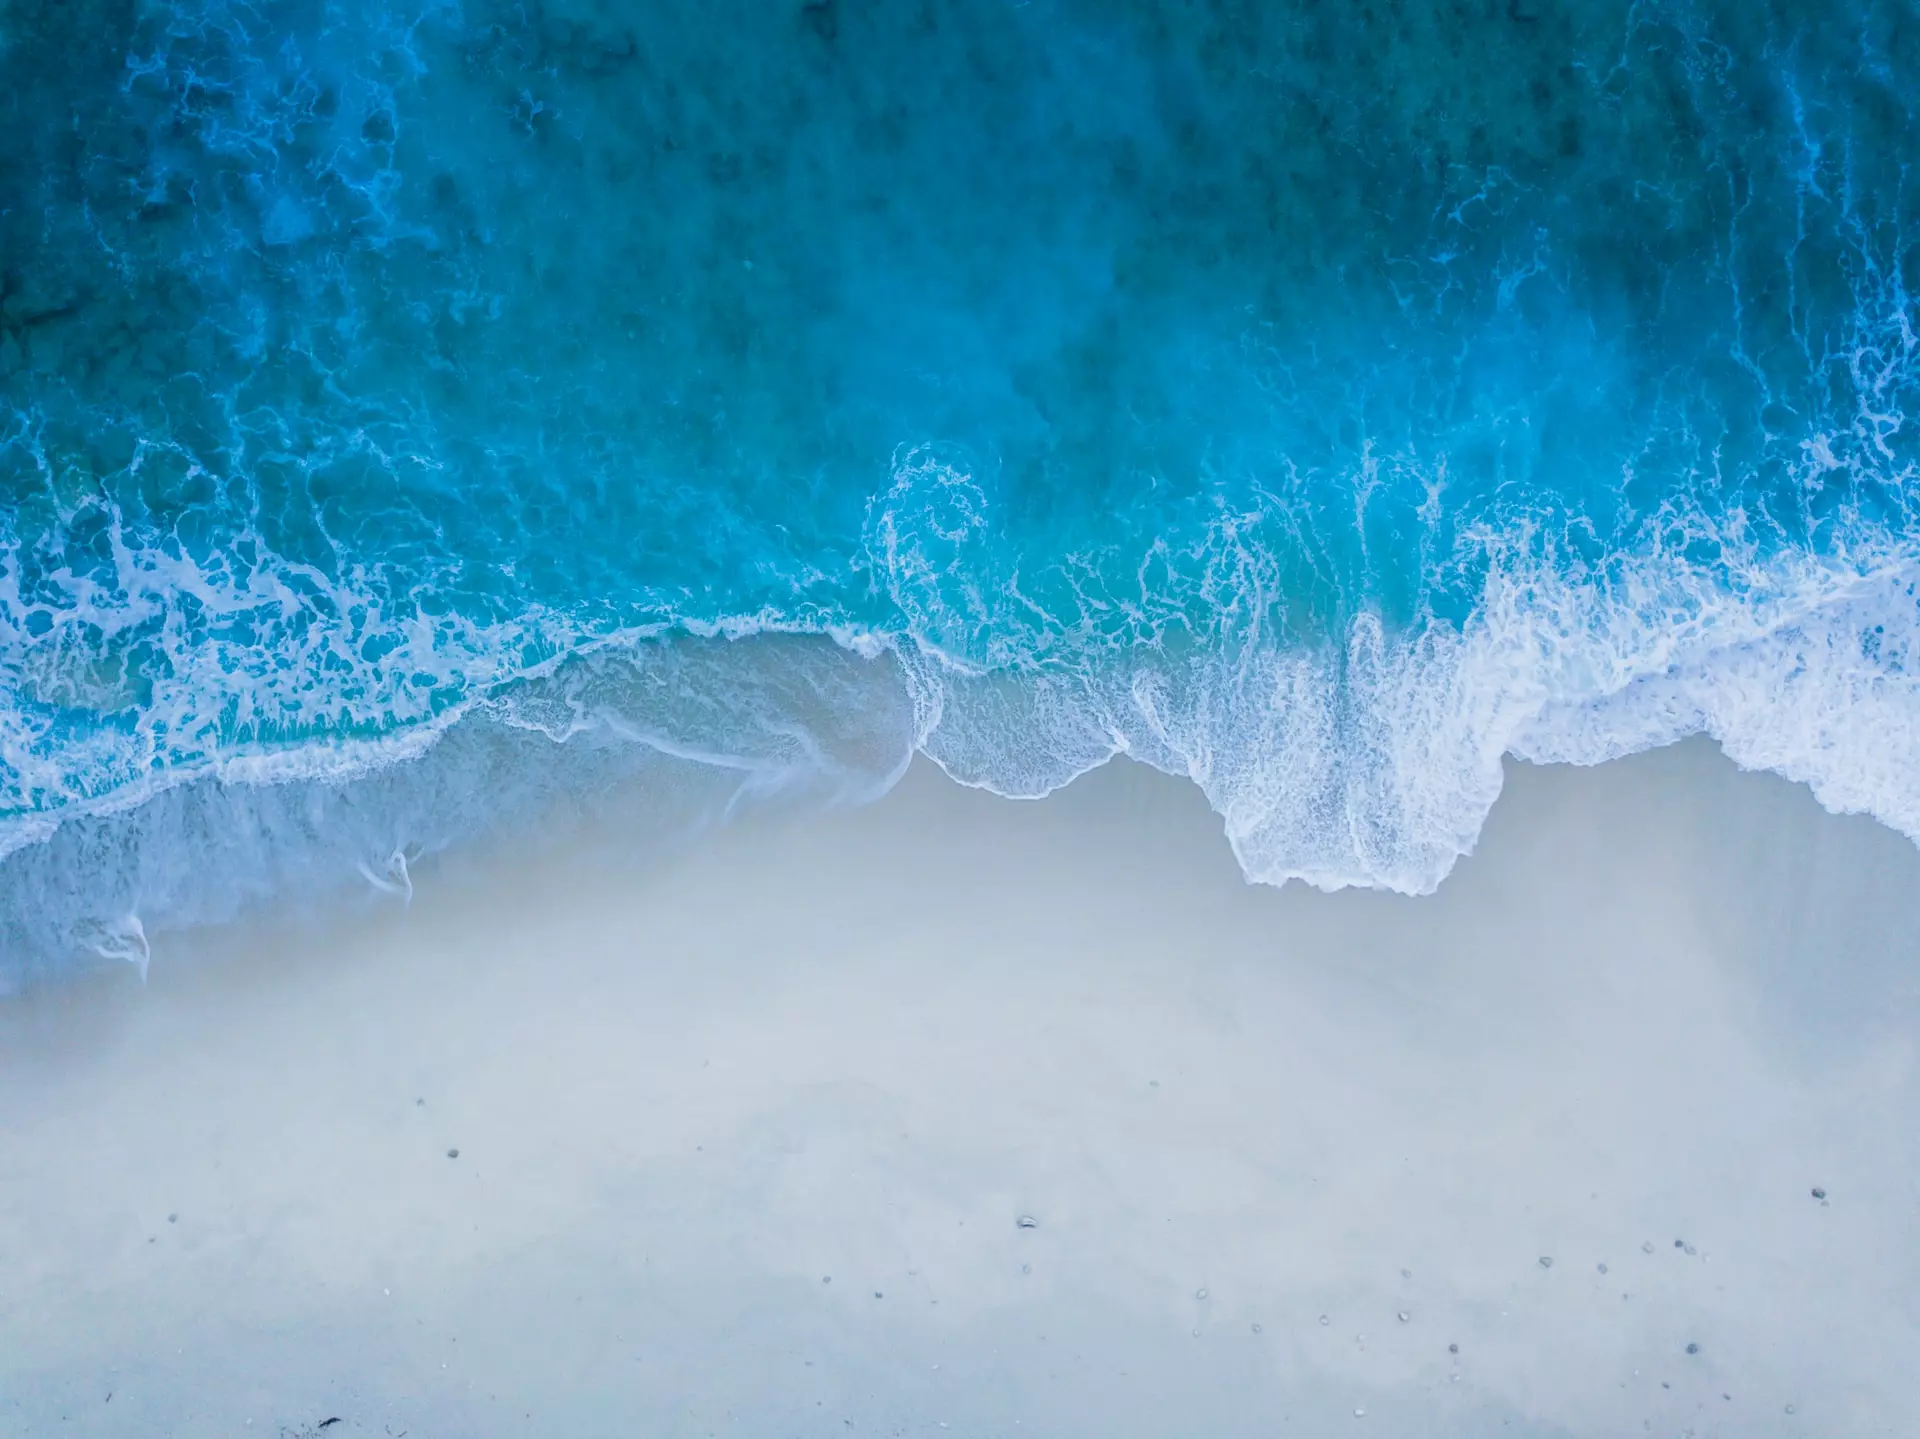 Aerial view of ocean waves reaching sandy beach